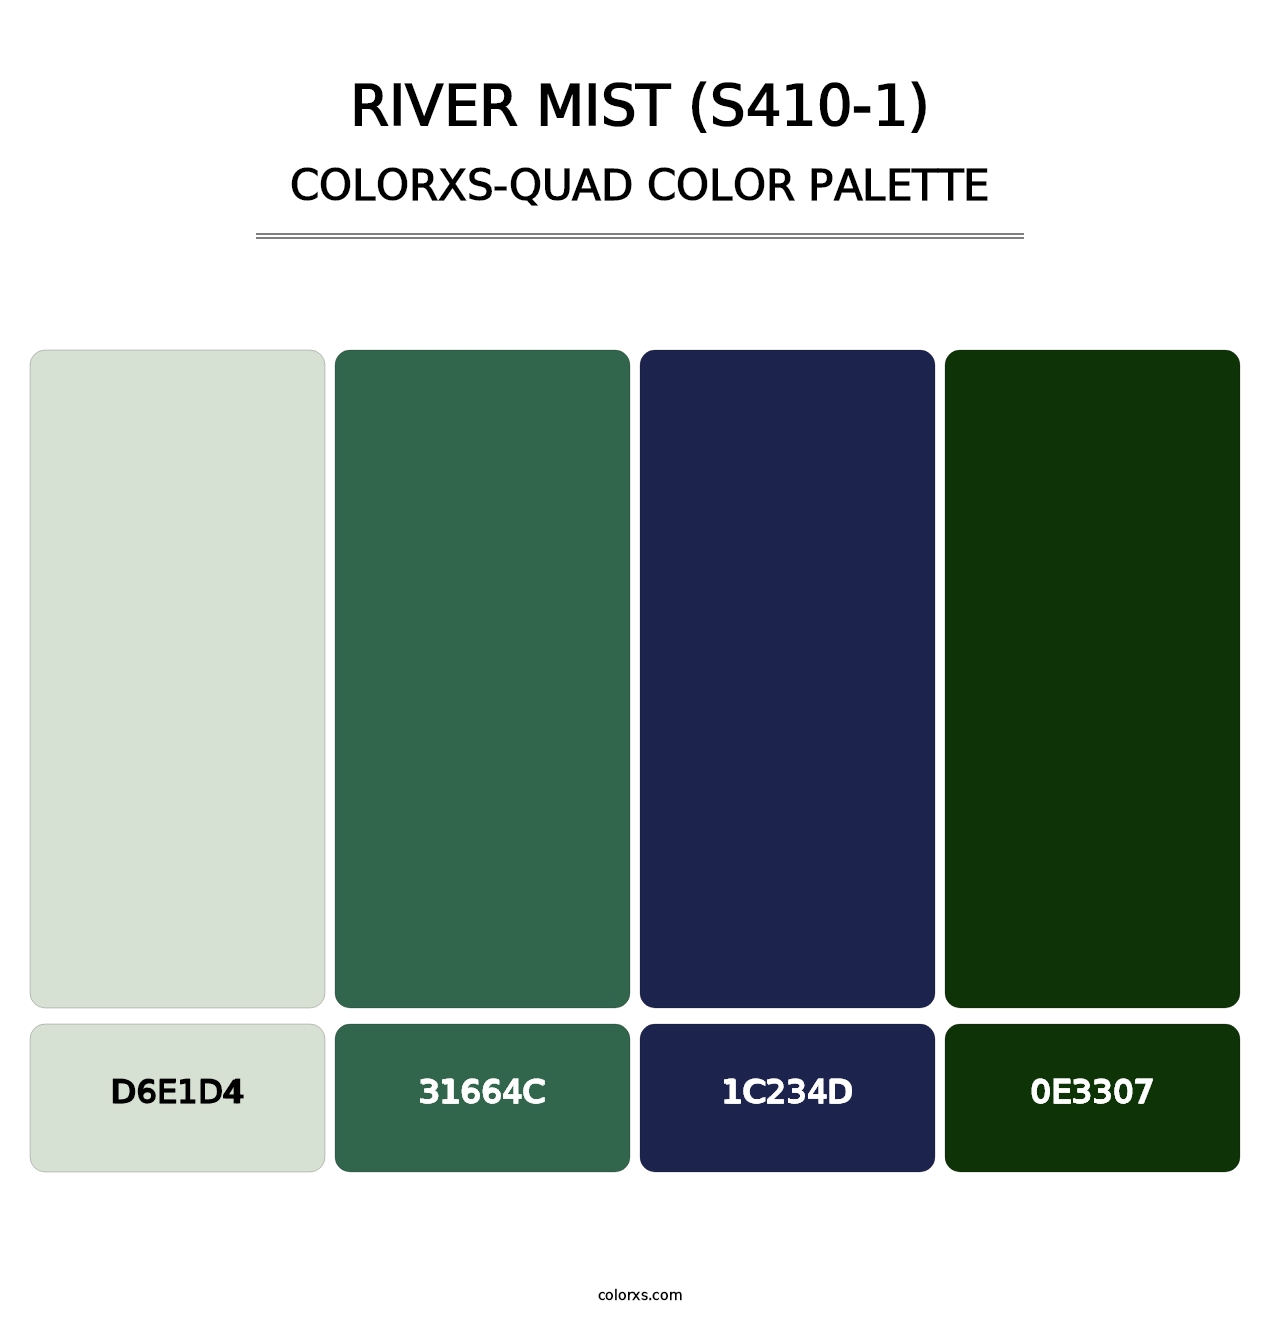 River Mist (S410-1) - Colorxs Quad Palette